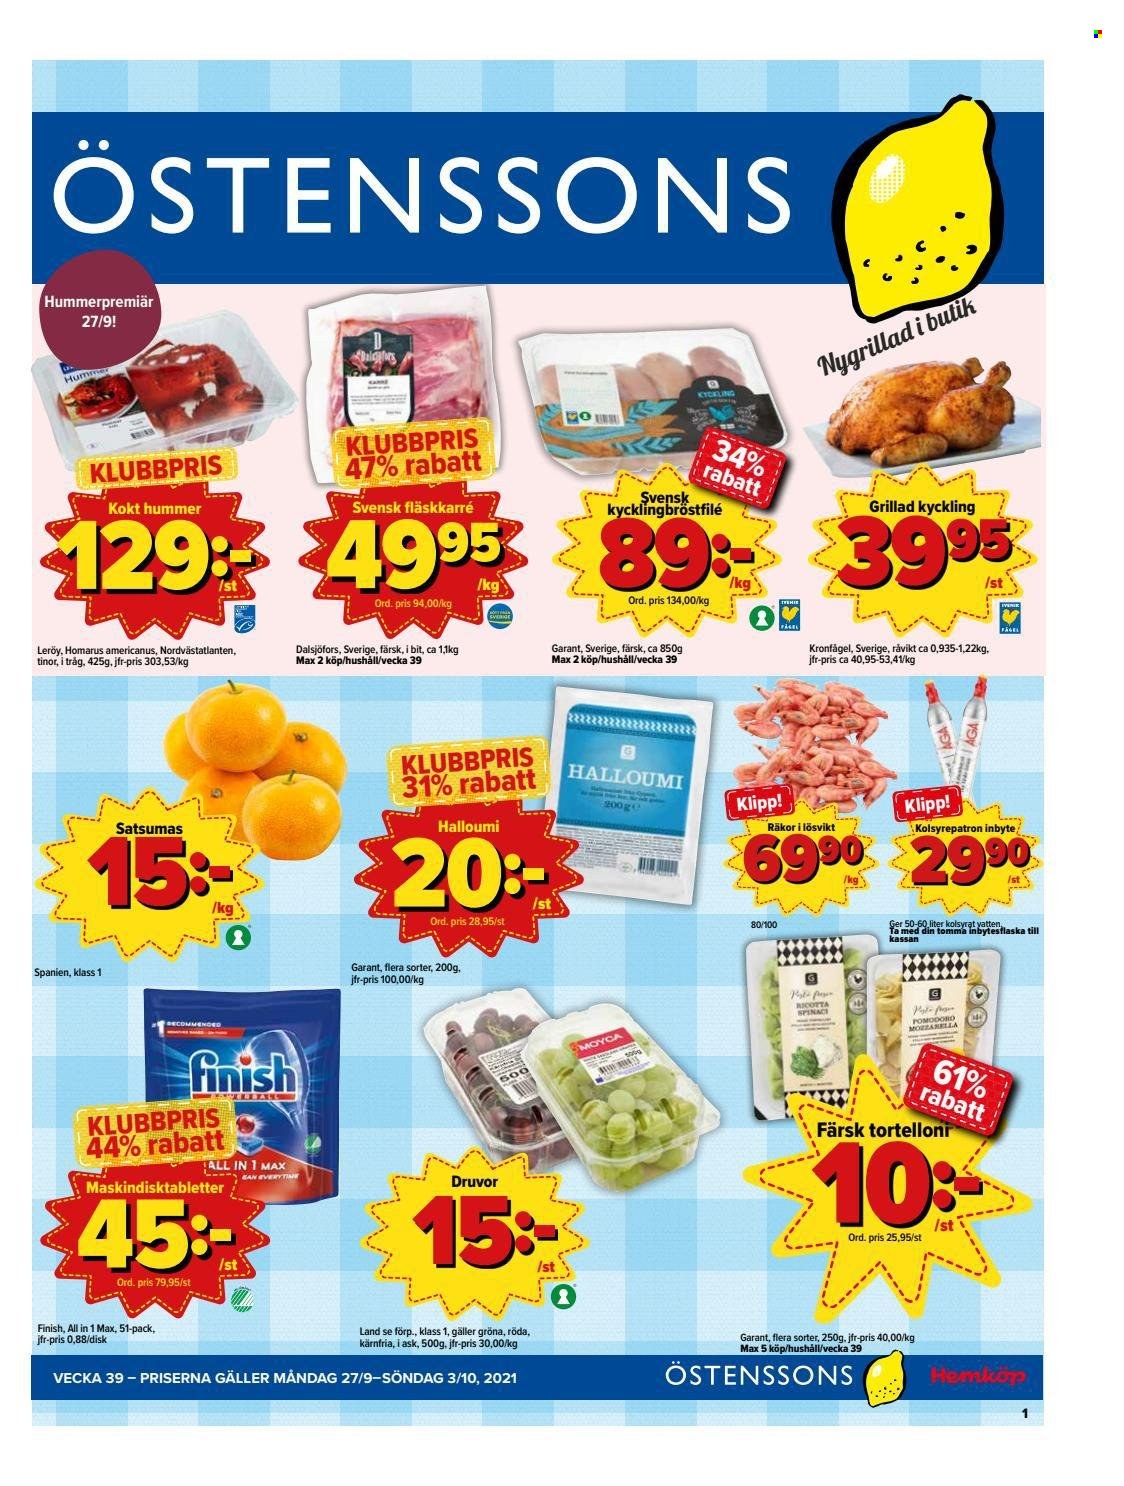 Östenssons reklamblad - 27/9 2021 - 3/10 2021.